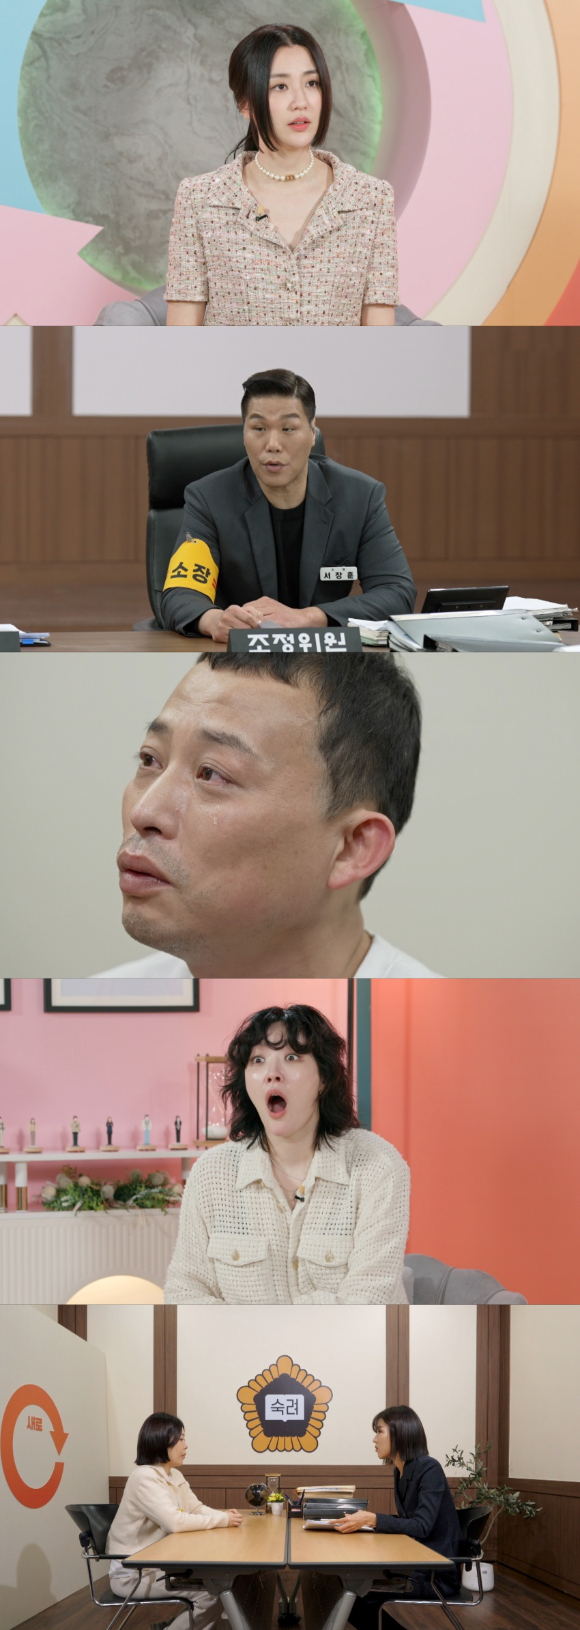 25일 방송되는 JTBC 예능 '이혼숙려캠프-새로고침'에서 참가자들의 마지막 이혼 결정 과정이 그려지고 있다. [사진=JTBC]